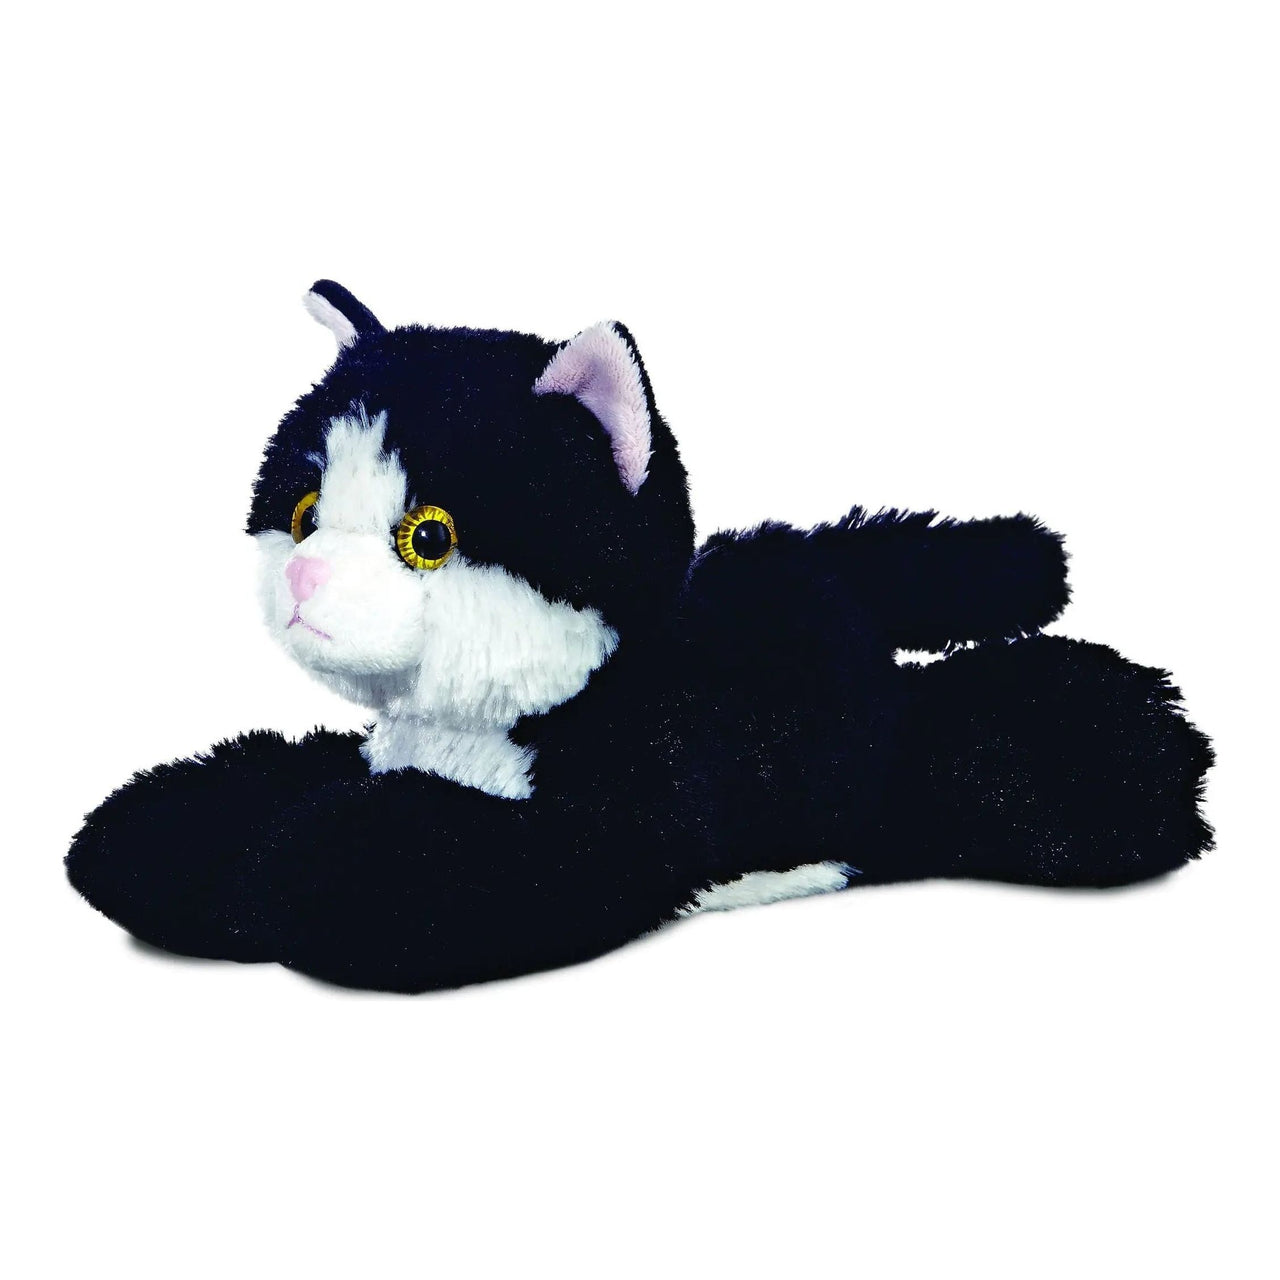 Mini Flopsies Black and White Cat 8" Plush Aurora